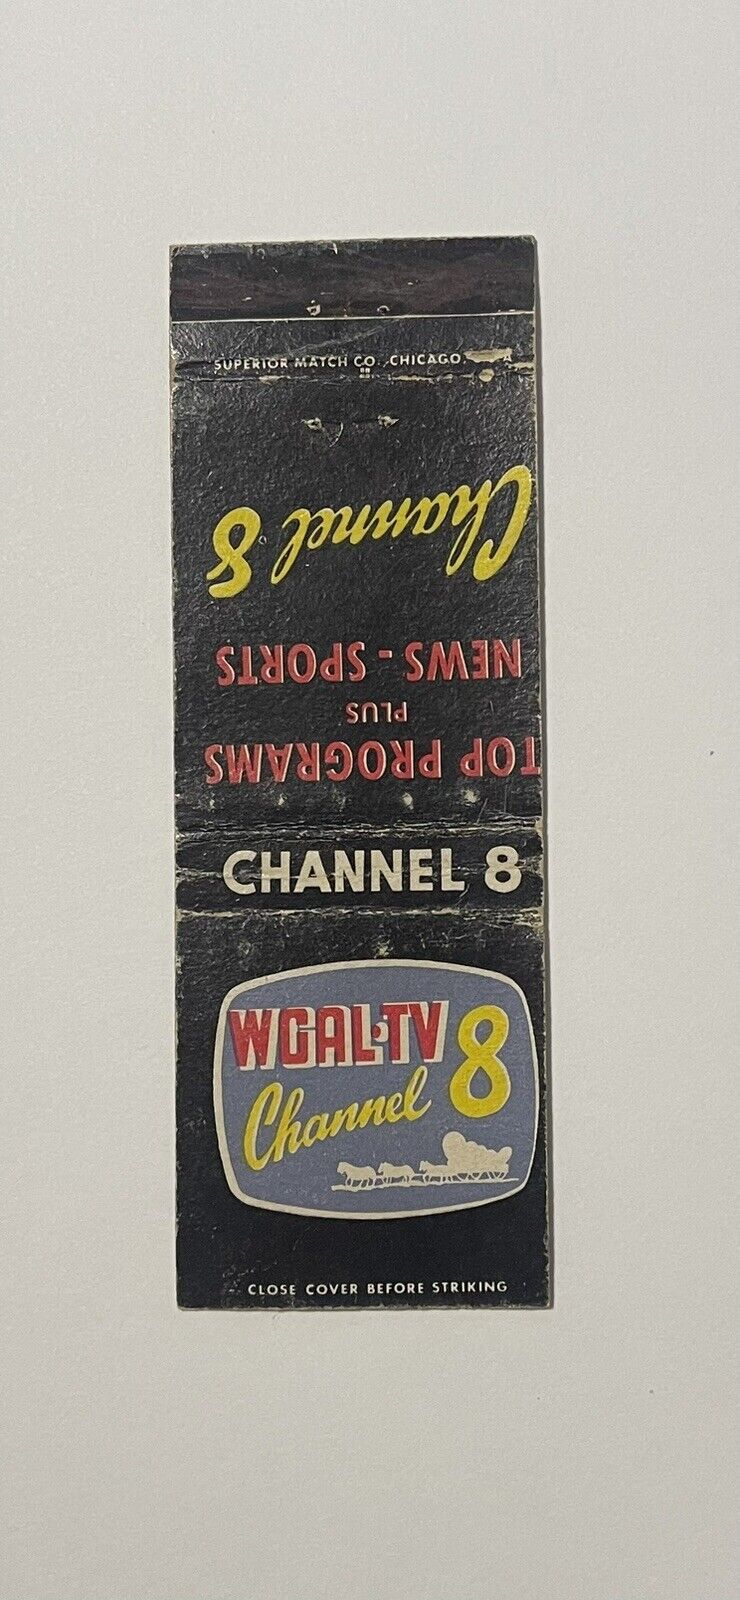 WGAL-TV Channel 8 Vintage Matchbook Cover